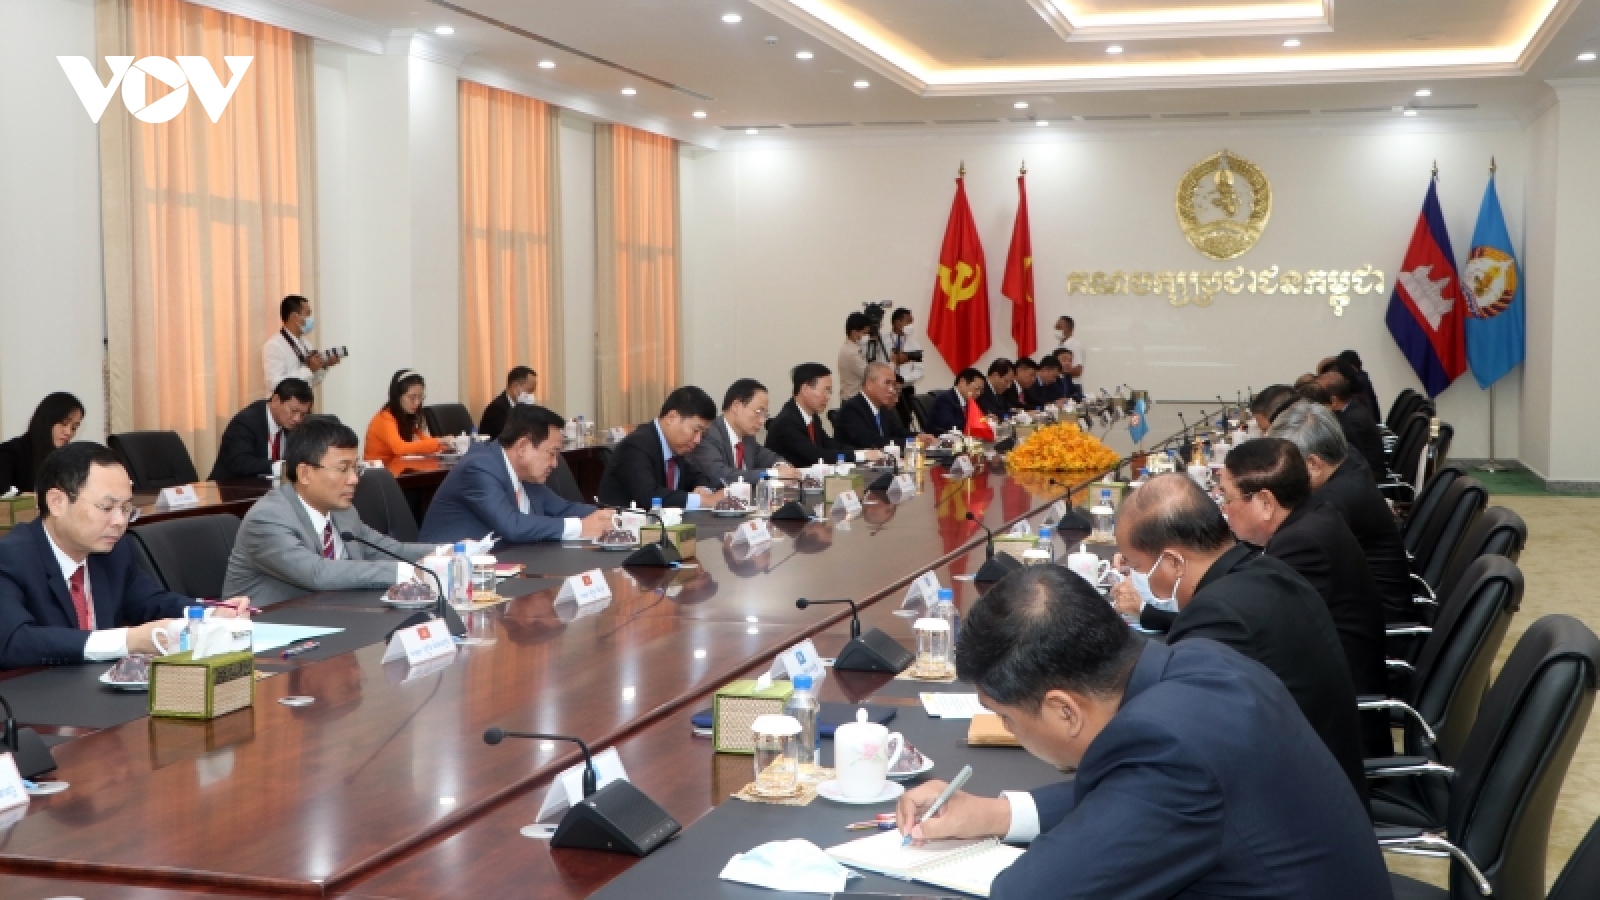 Ủy viên bộ Chính trị, Thường trực ban Bí thư Võ Văn Thưởng thăm chính thức Campuchia